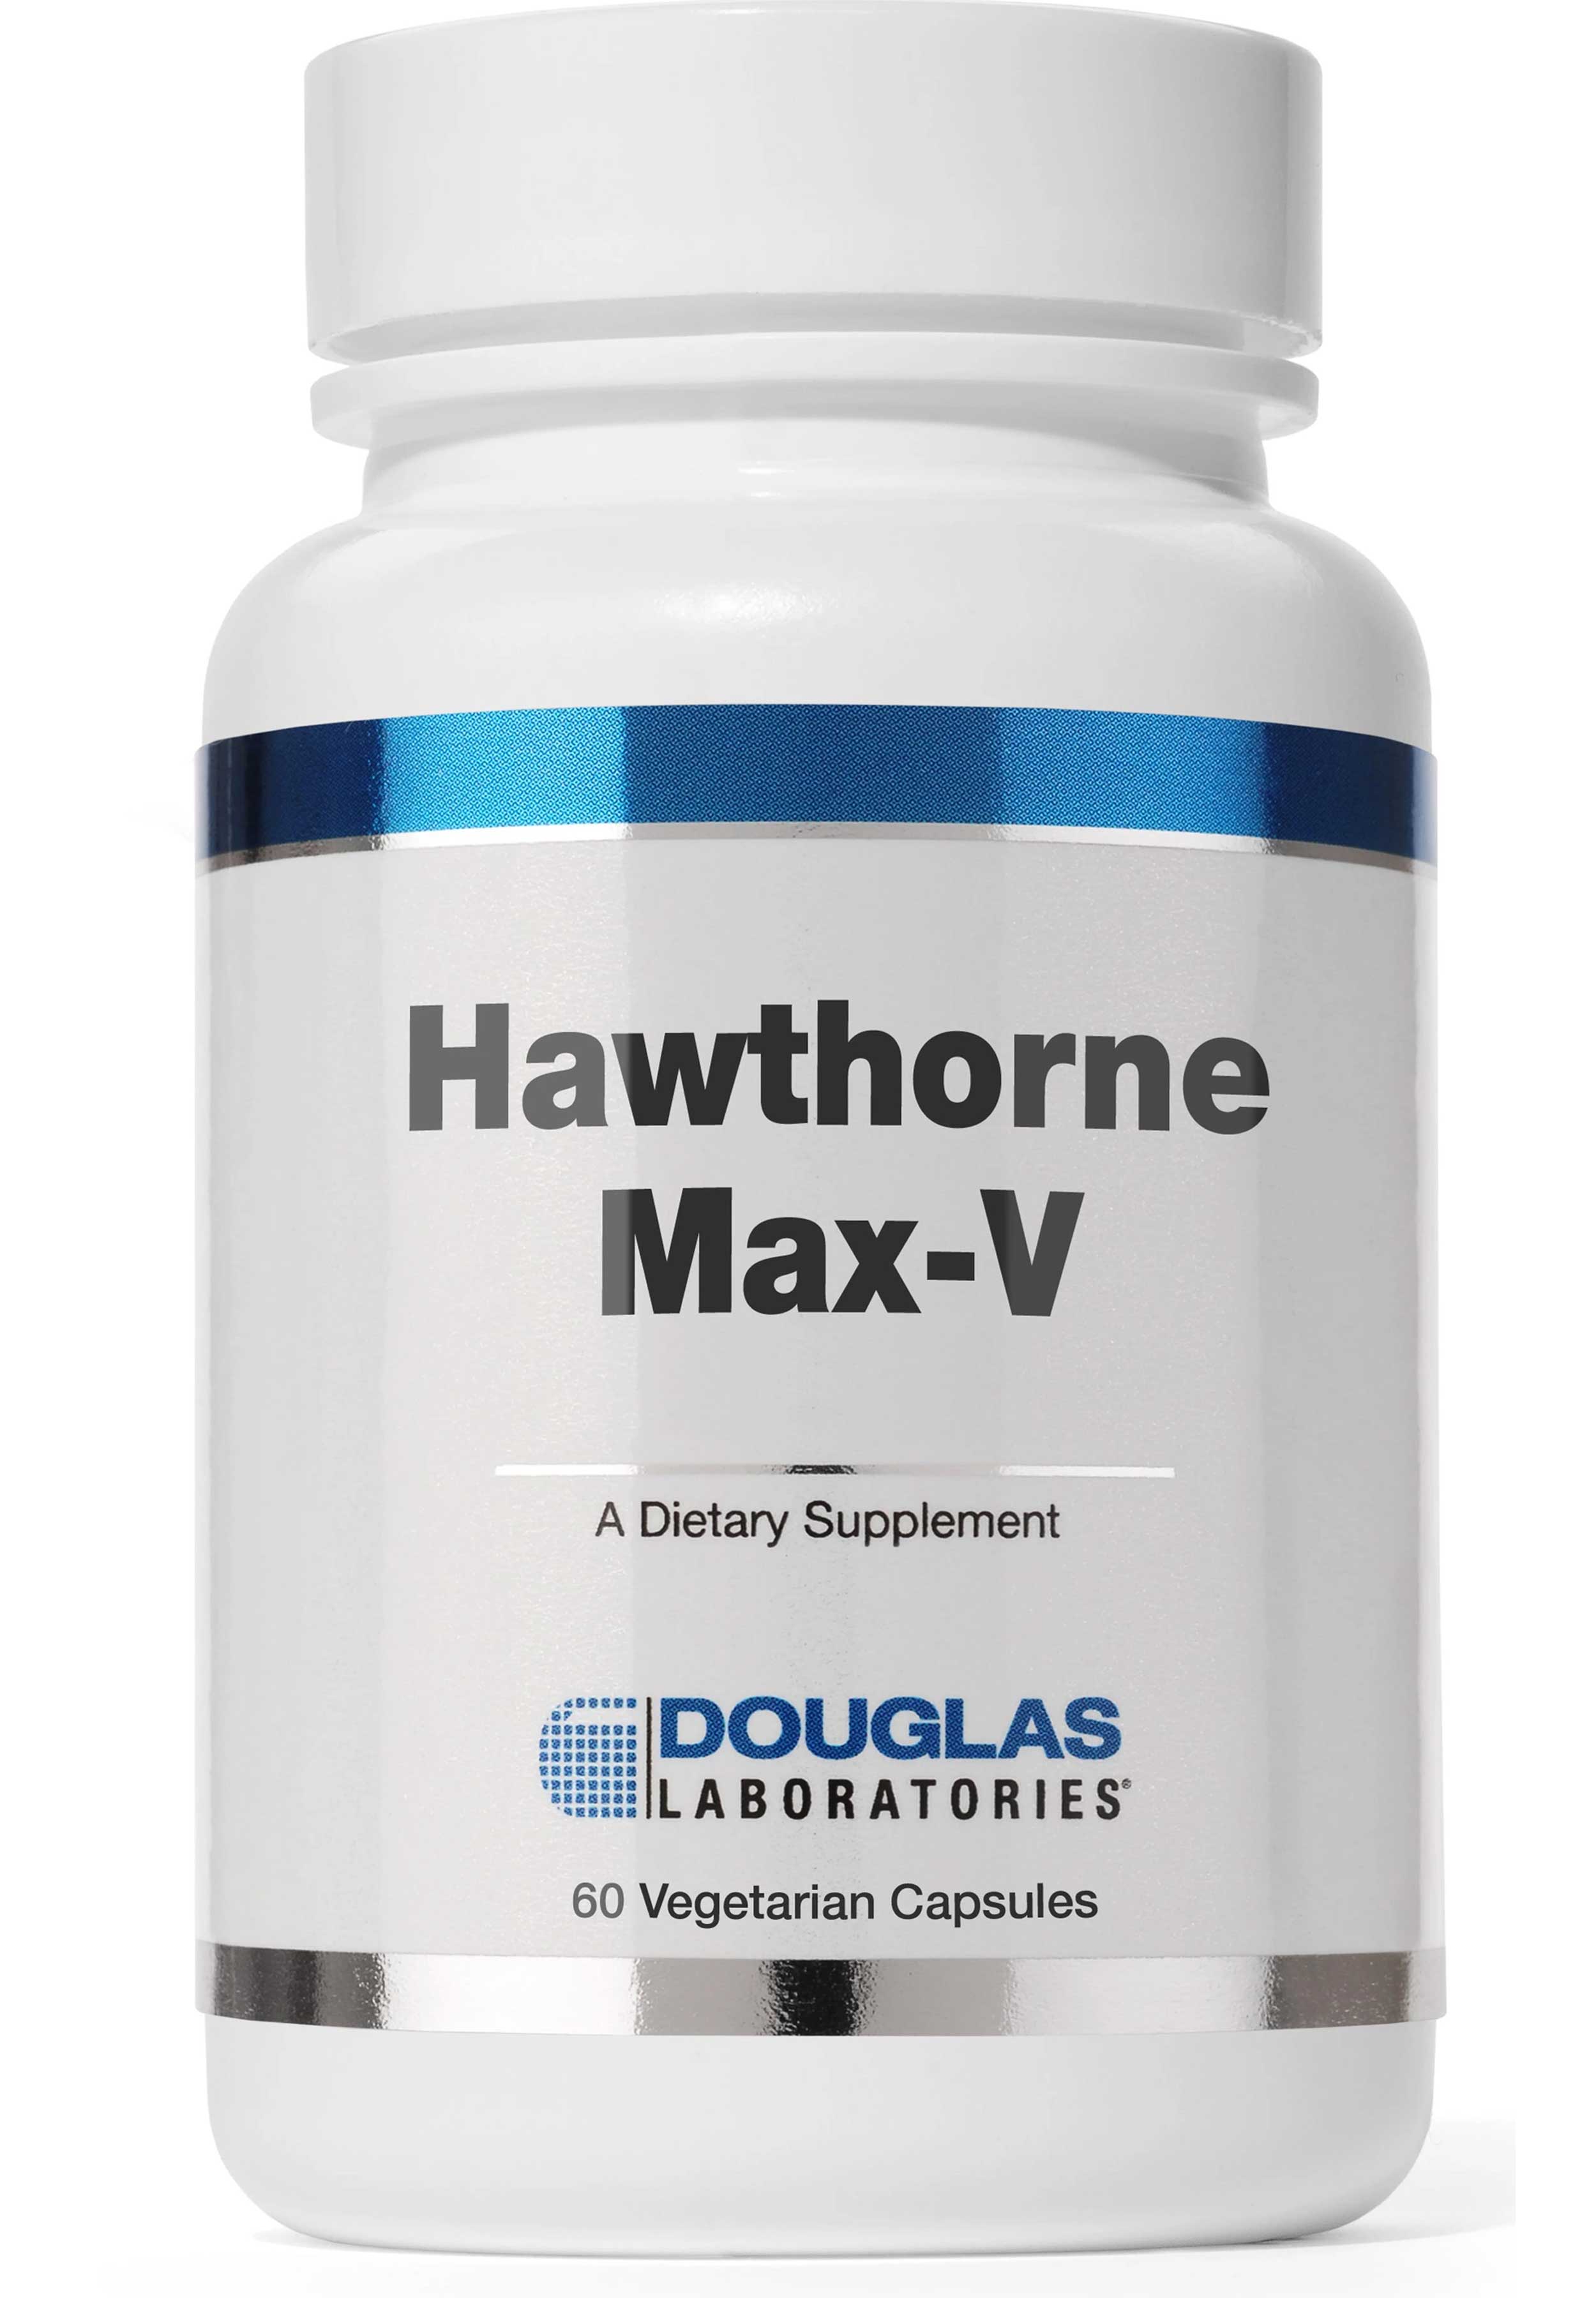 Douglas Laboratories Hawthorne Max-V